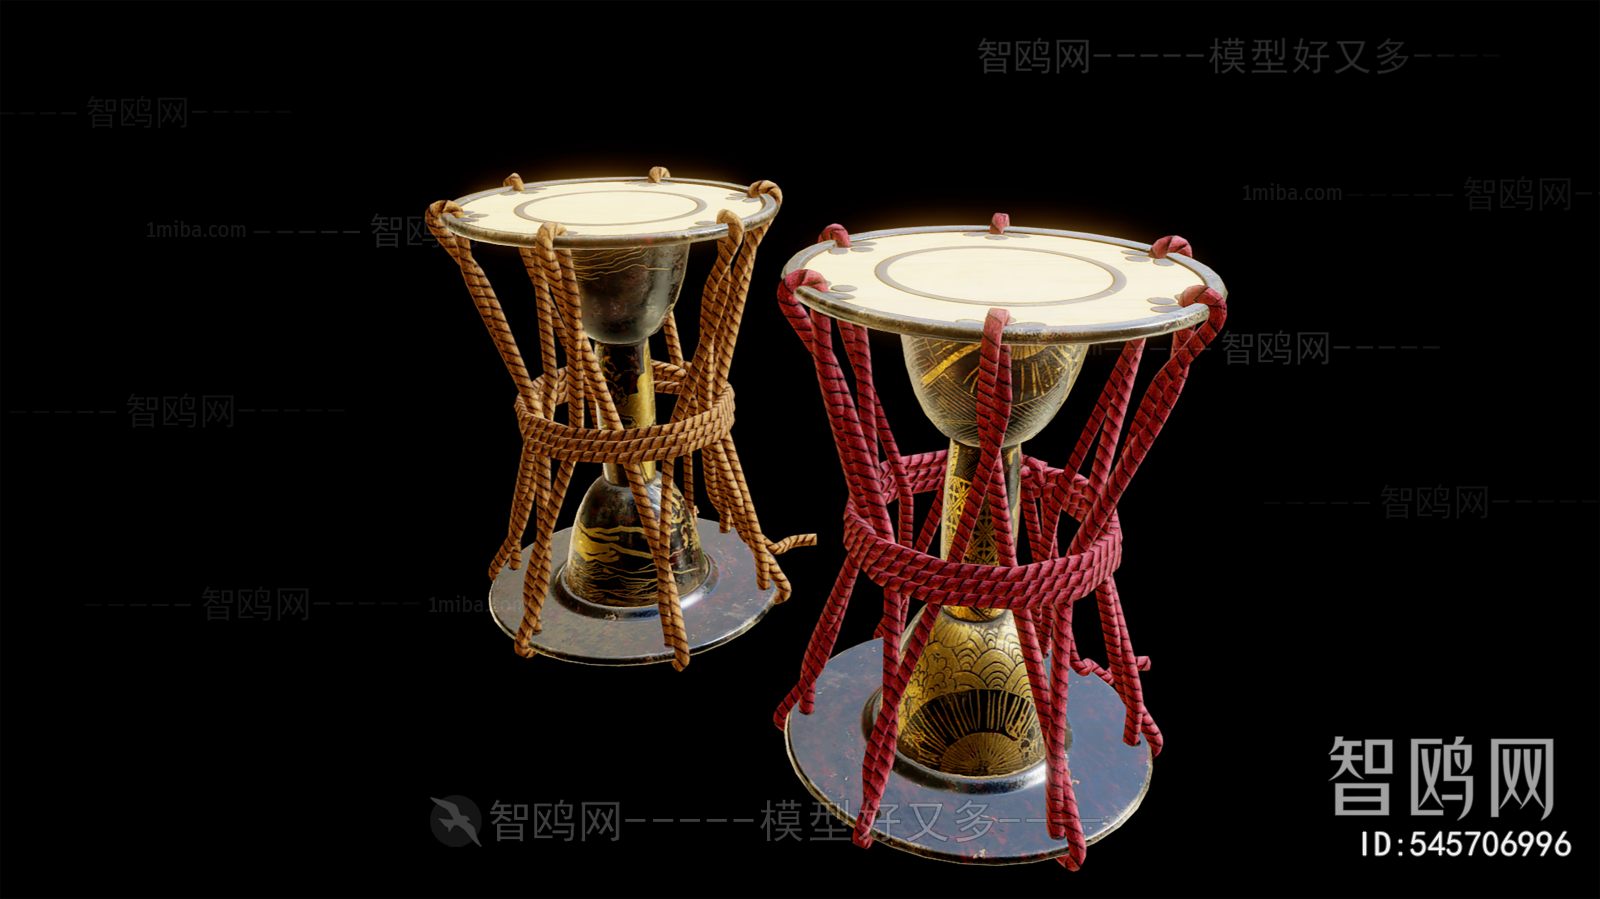 New Chinese Style Music Equipment